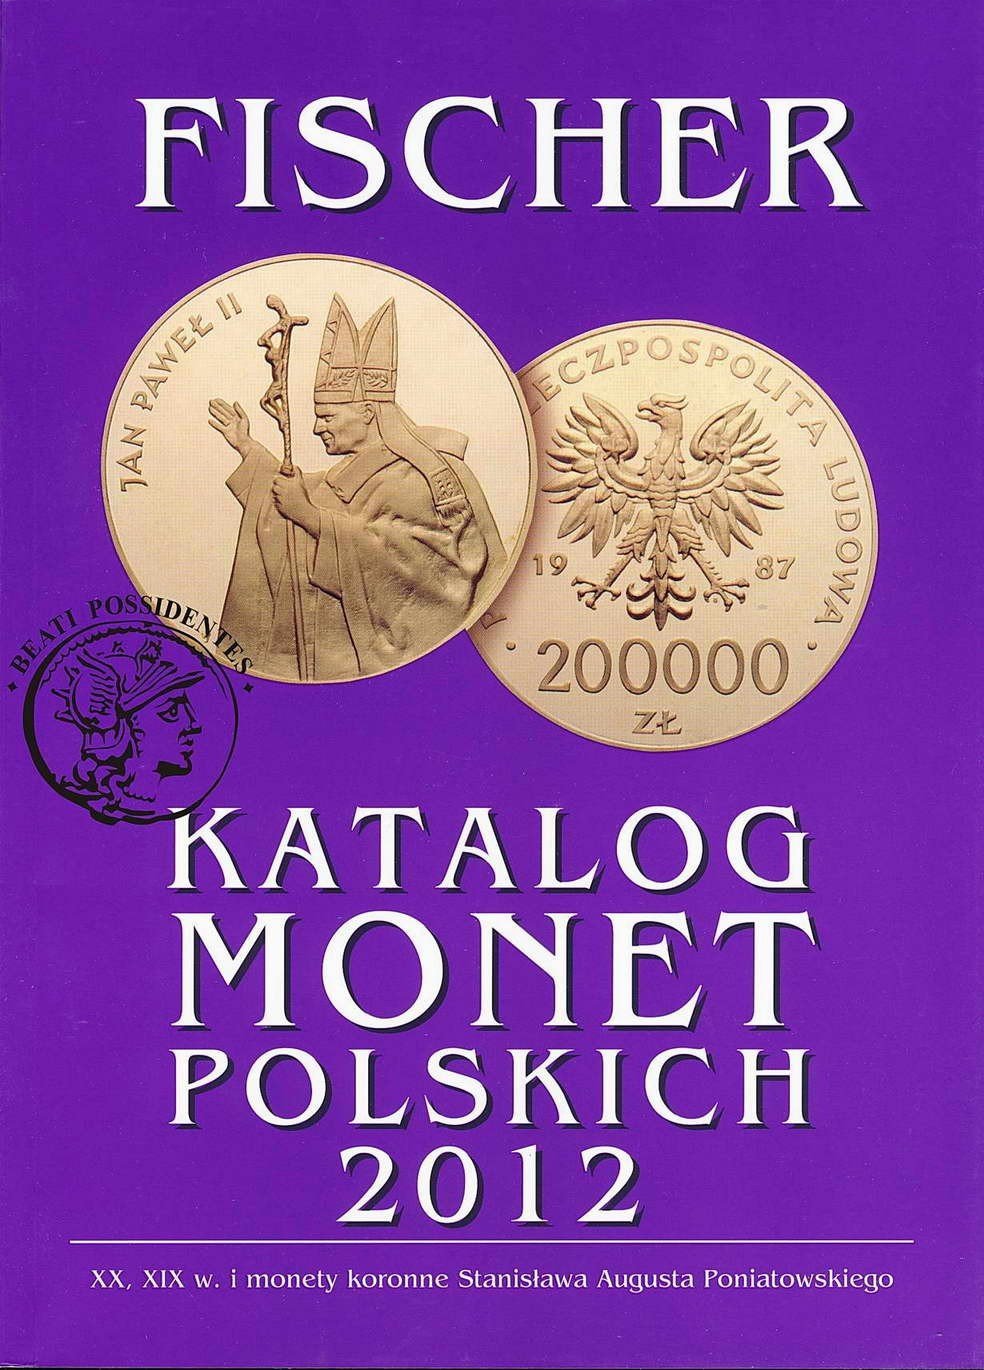 Katalog monet polskich FISCHER 2012